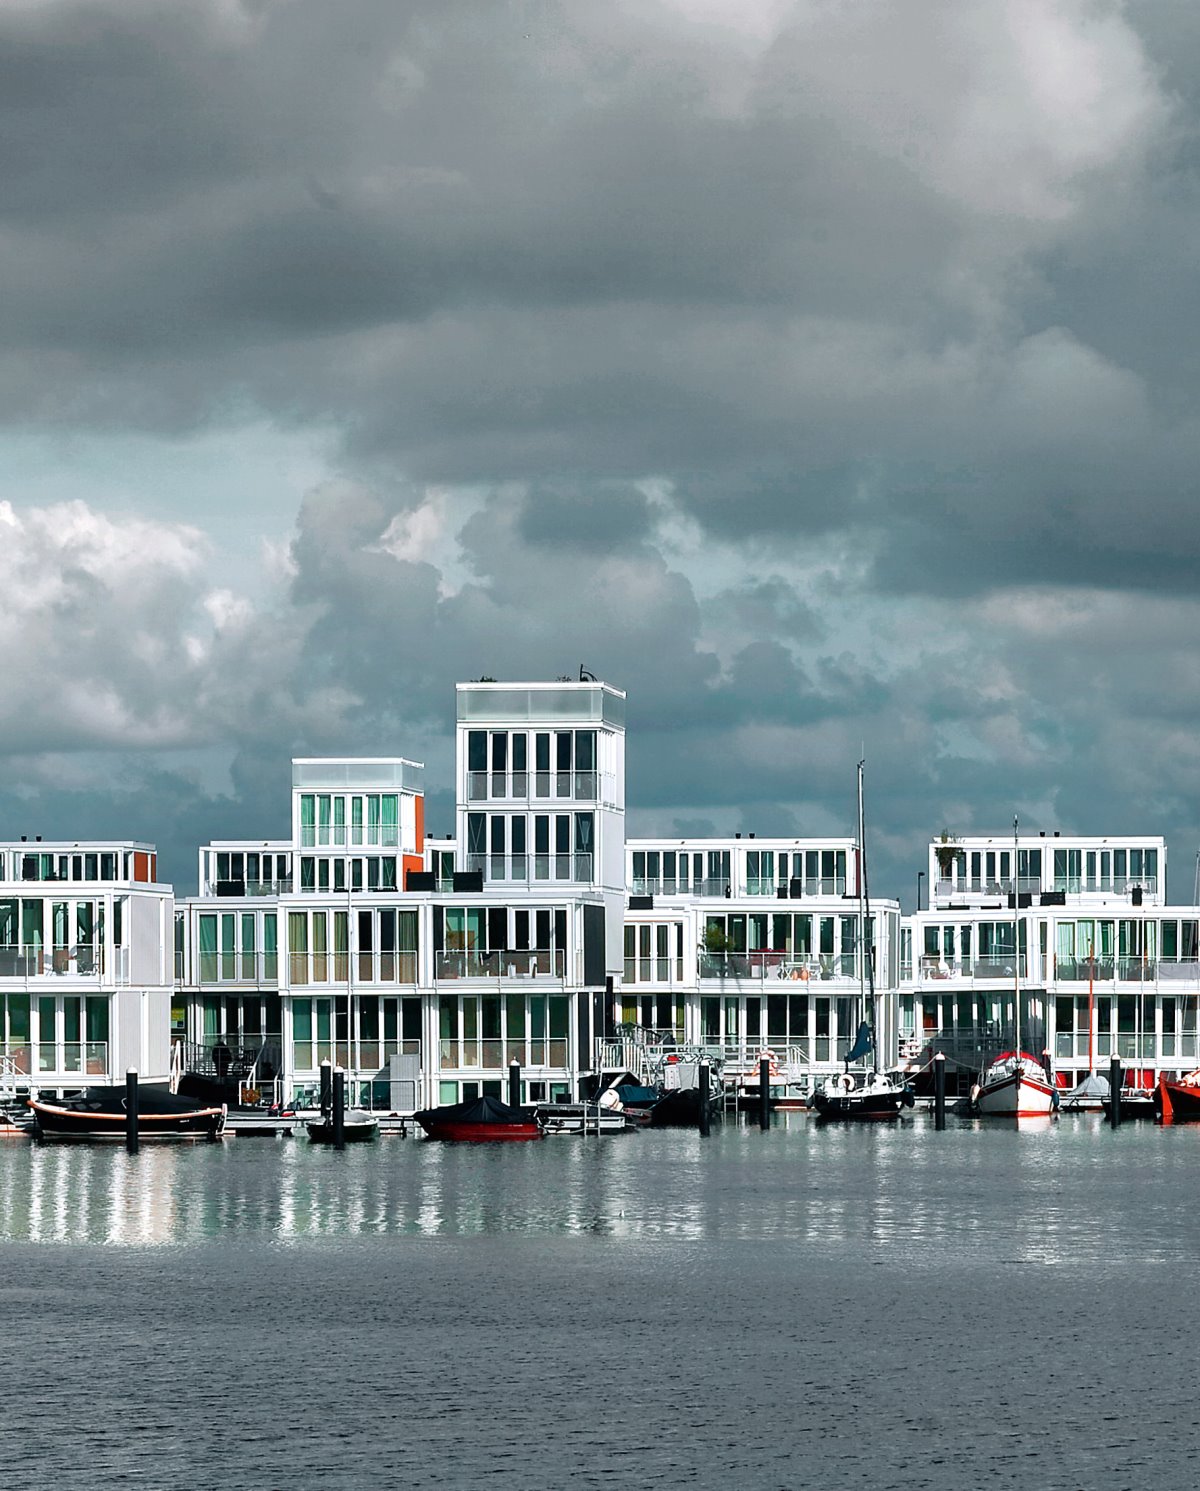 πλωτή γειτονιά Άμστερνταμ με σπίτια που επιπλέουν στο νερό